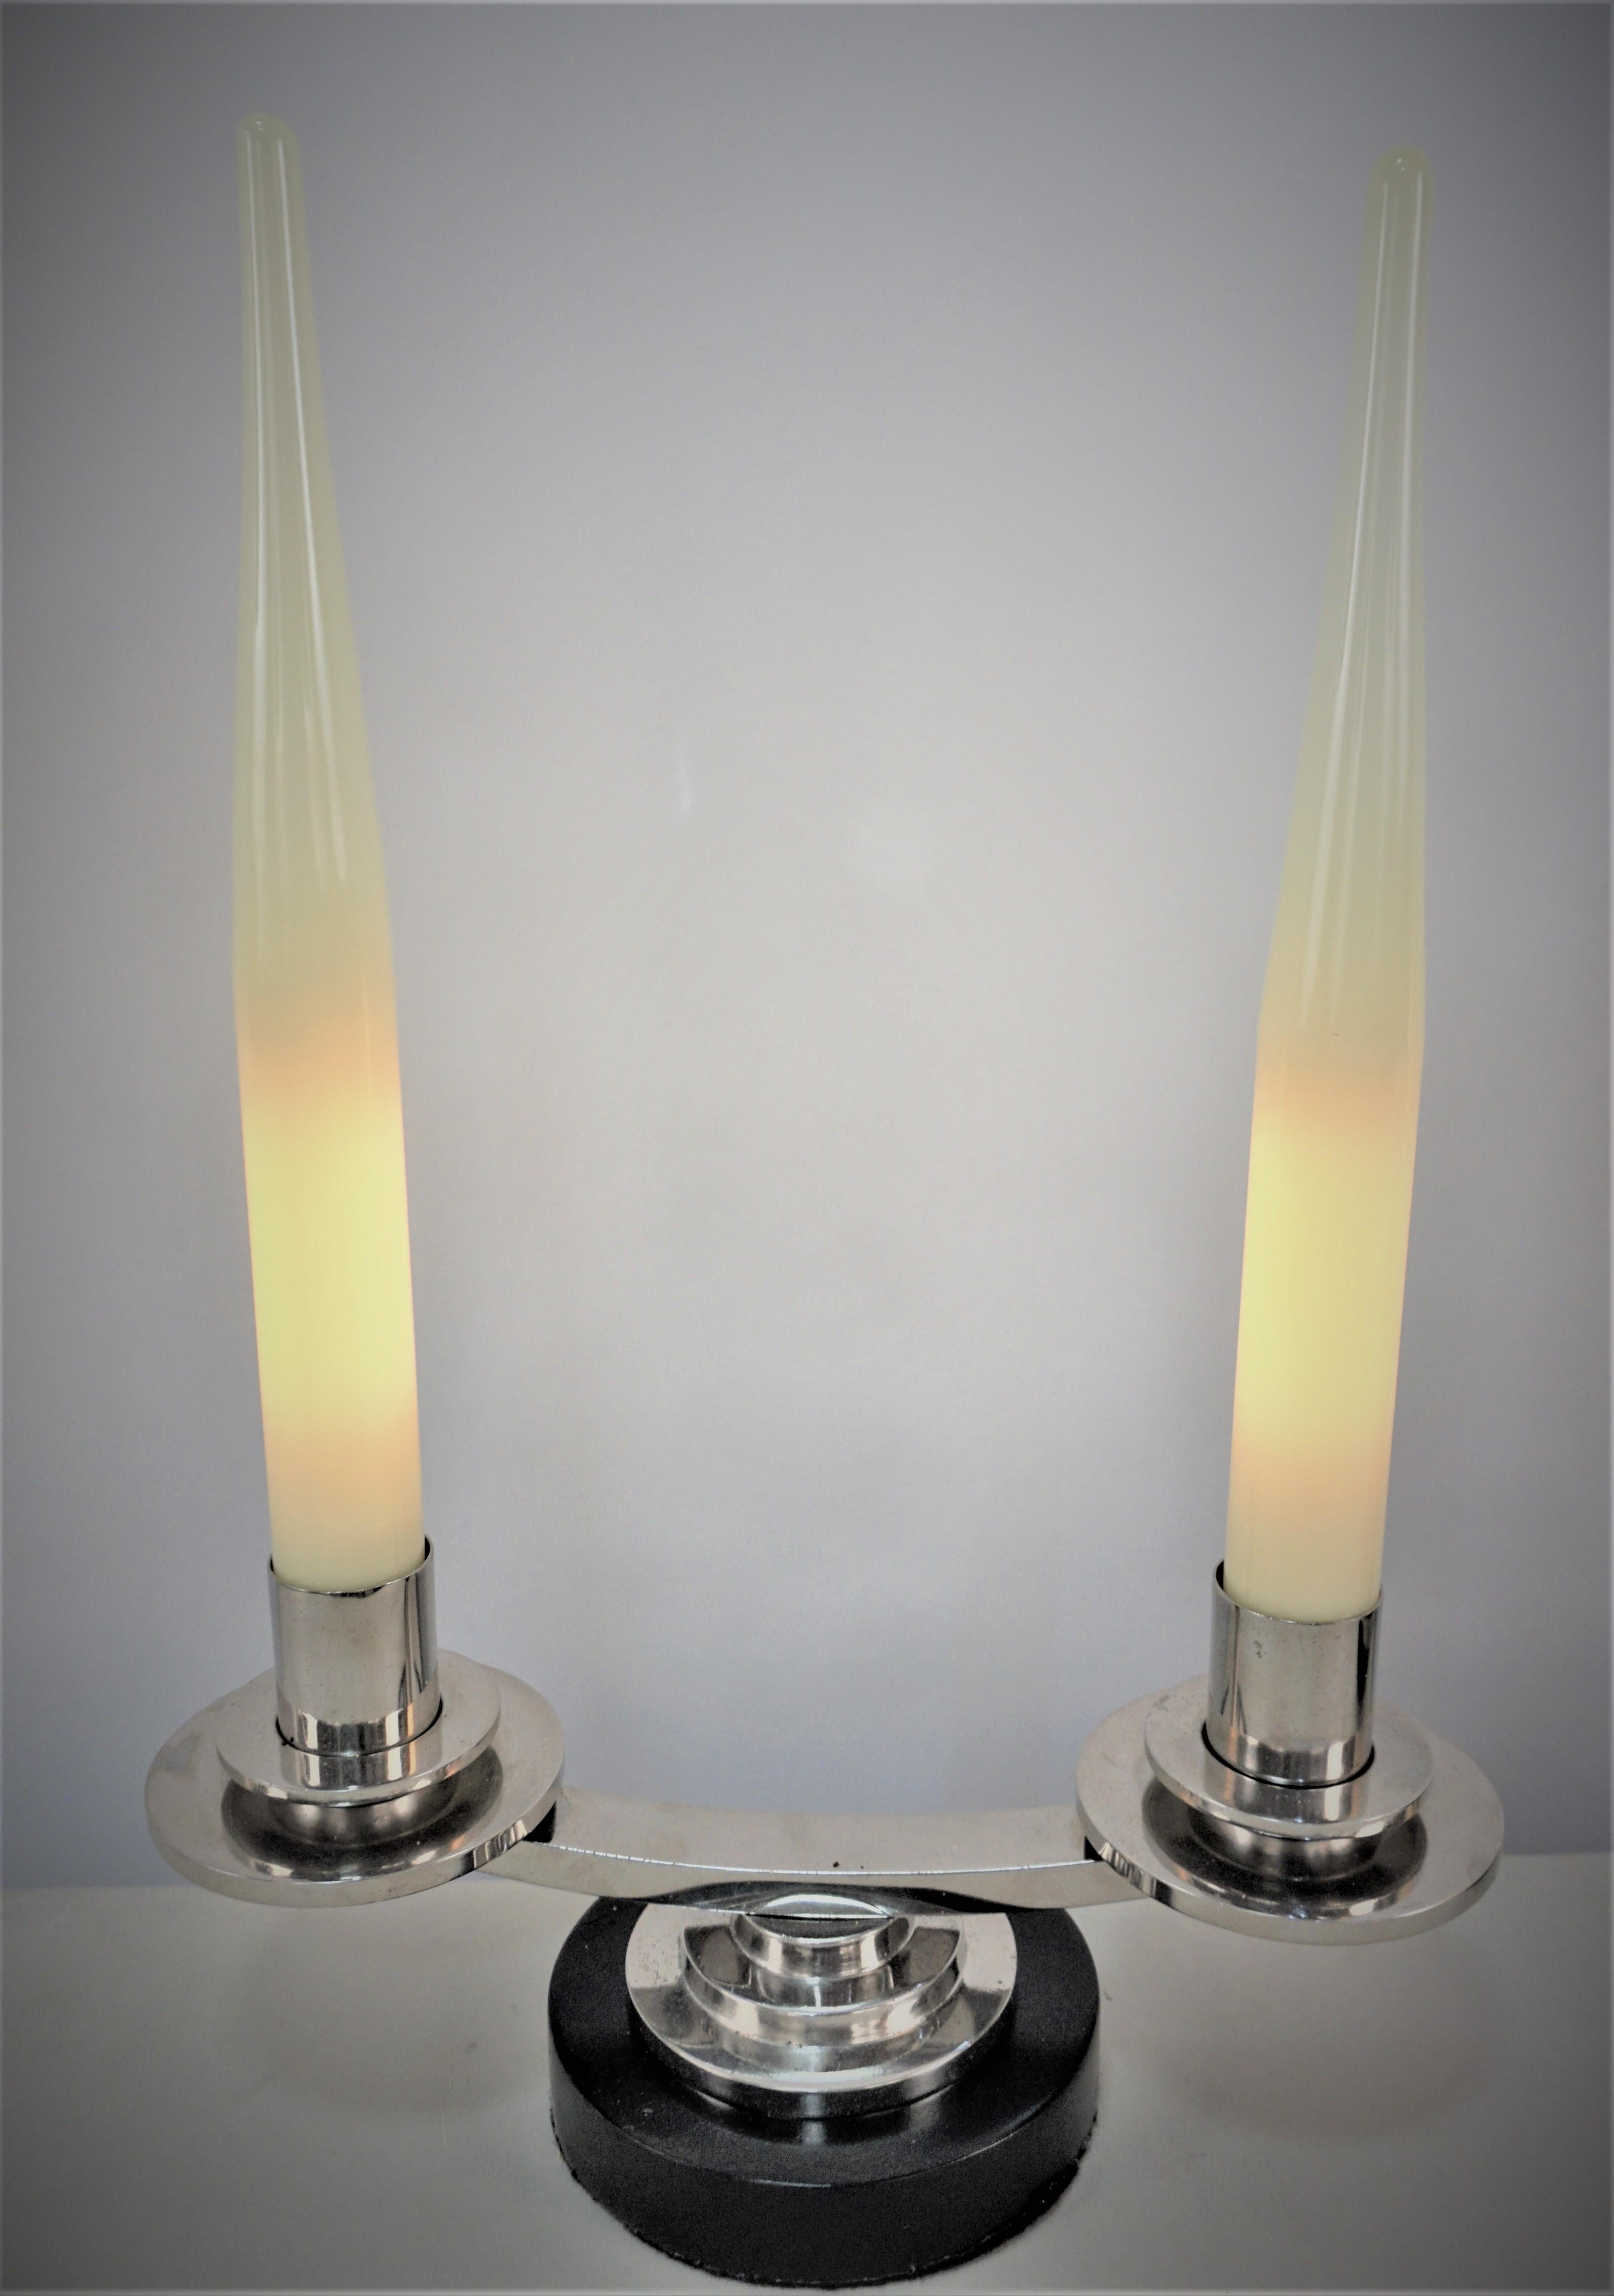 Paire de lampes candélabres à double bras, simples mais élégantes, en nickel sur bronze avec base en bois laqué.
Ces lampes candélabres sont conçues avec du verre en forme de bougie qui recouvre chaque ampoule.